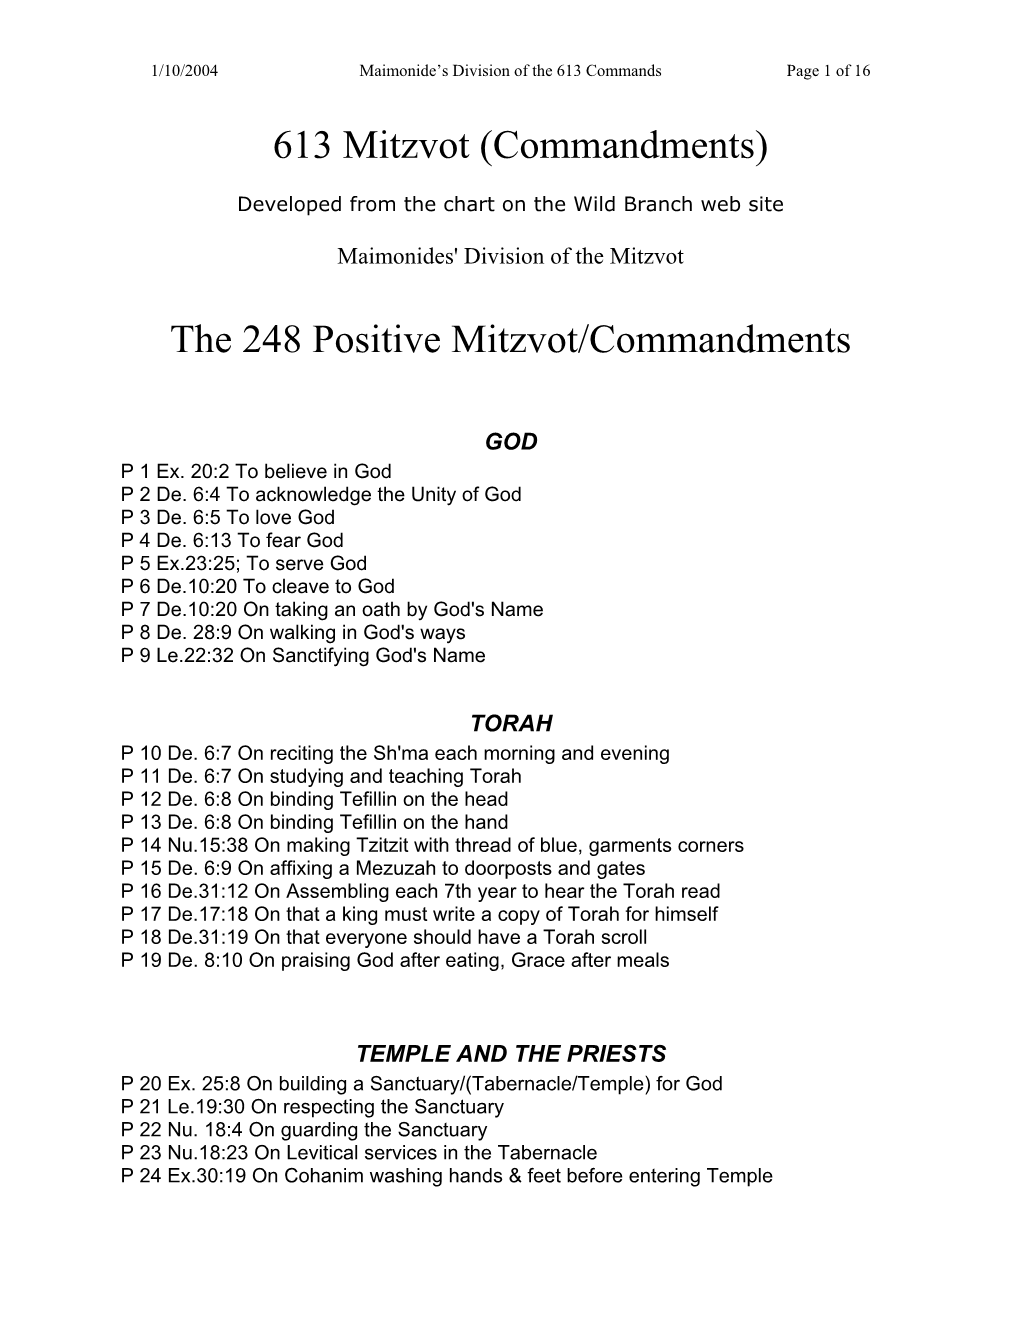 613 Mitzvot (Commandments)